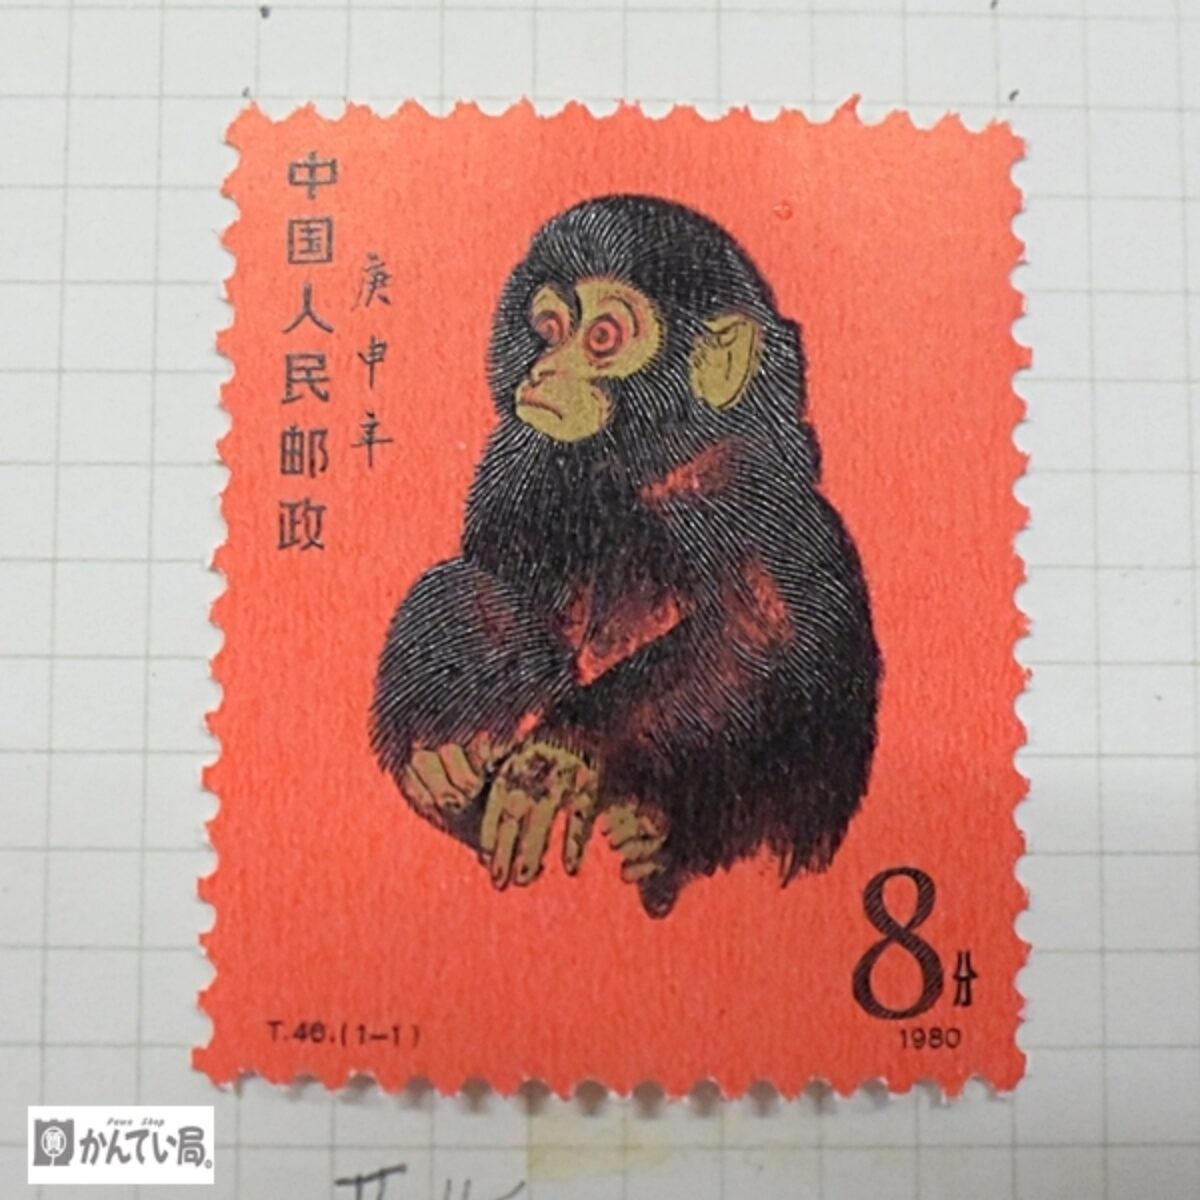 中国切手 T46 赤猿 年賀切手 1980年 - 使用済切手/官製はがき